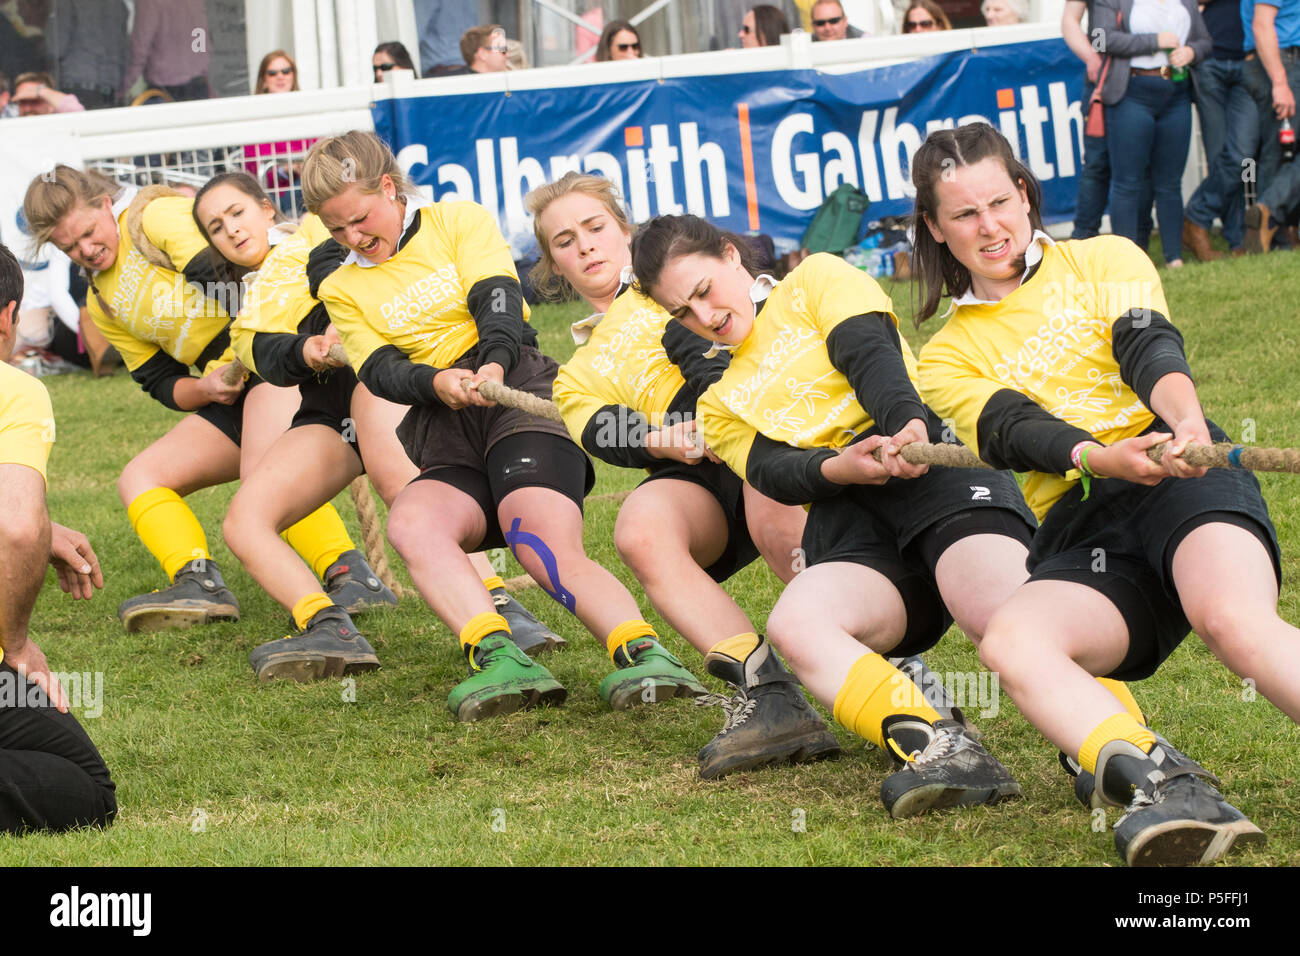 Meine Damen Tauziehen Team - Ayr junge Landwirte - Sieger der Damen Tauziehen nationalen Wettbewerb des Royal Highland Show 2018 Stockfoto